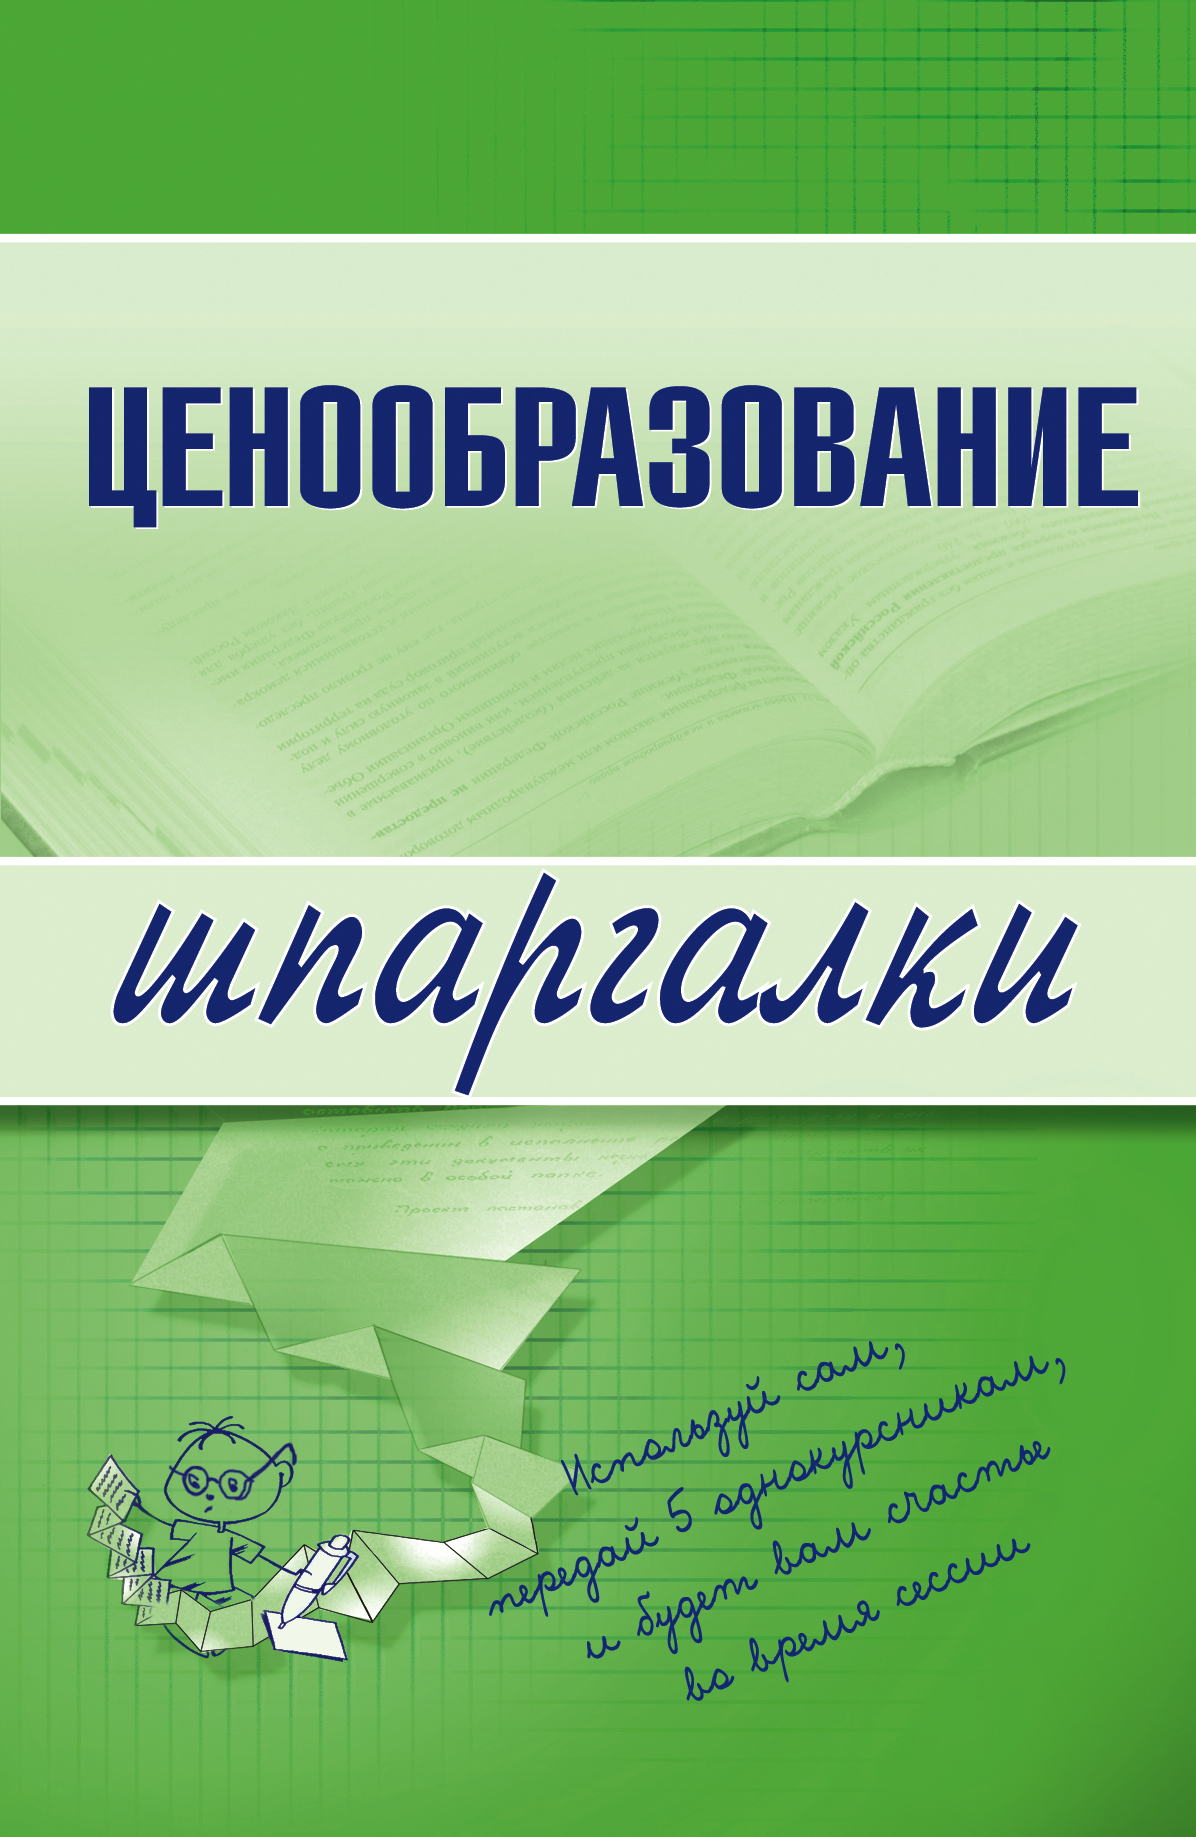 Книга Ценообразование из серии , созданная А. Якорева, может относится к жанру Экономика. Стоимость электронной книги Ценообразование с идентификатором 179727 составляет 44.95 руб.